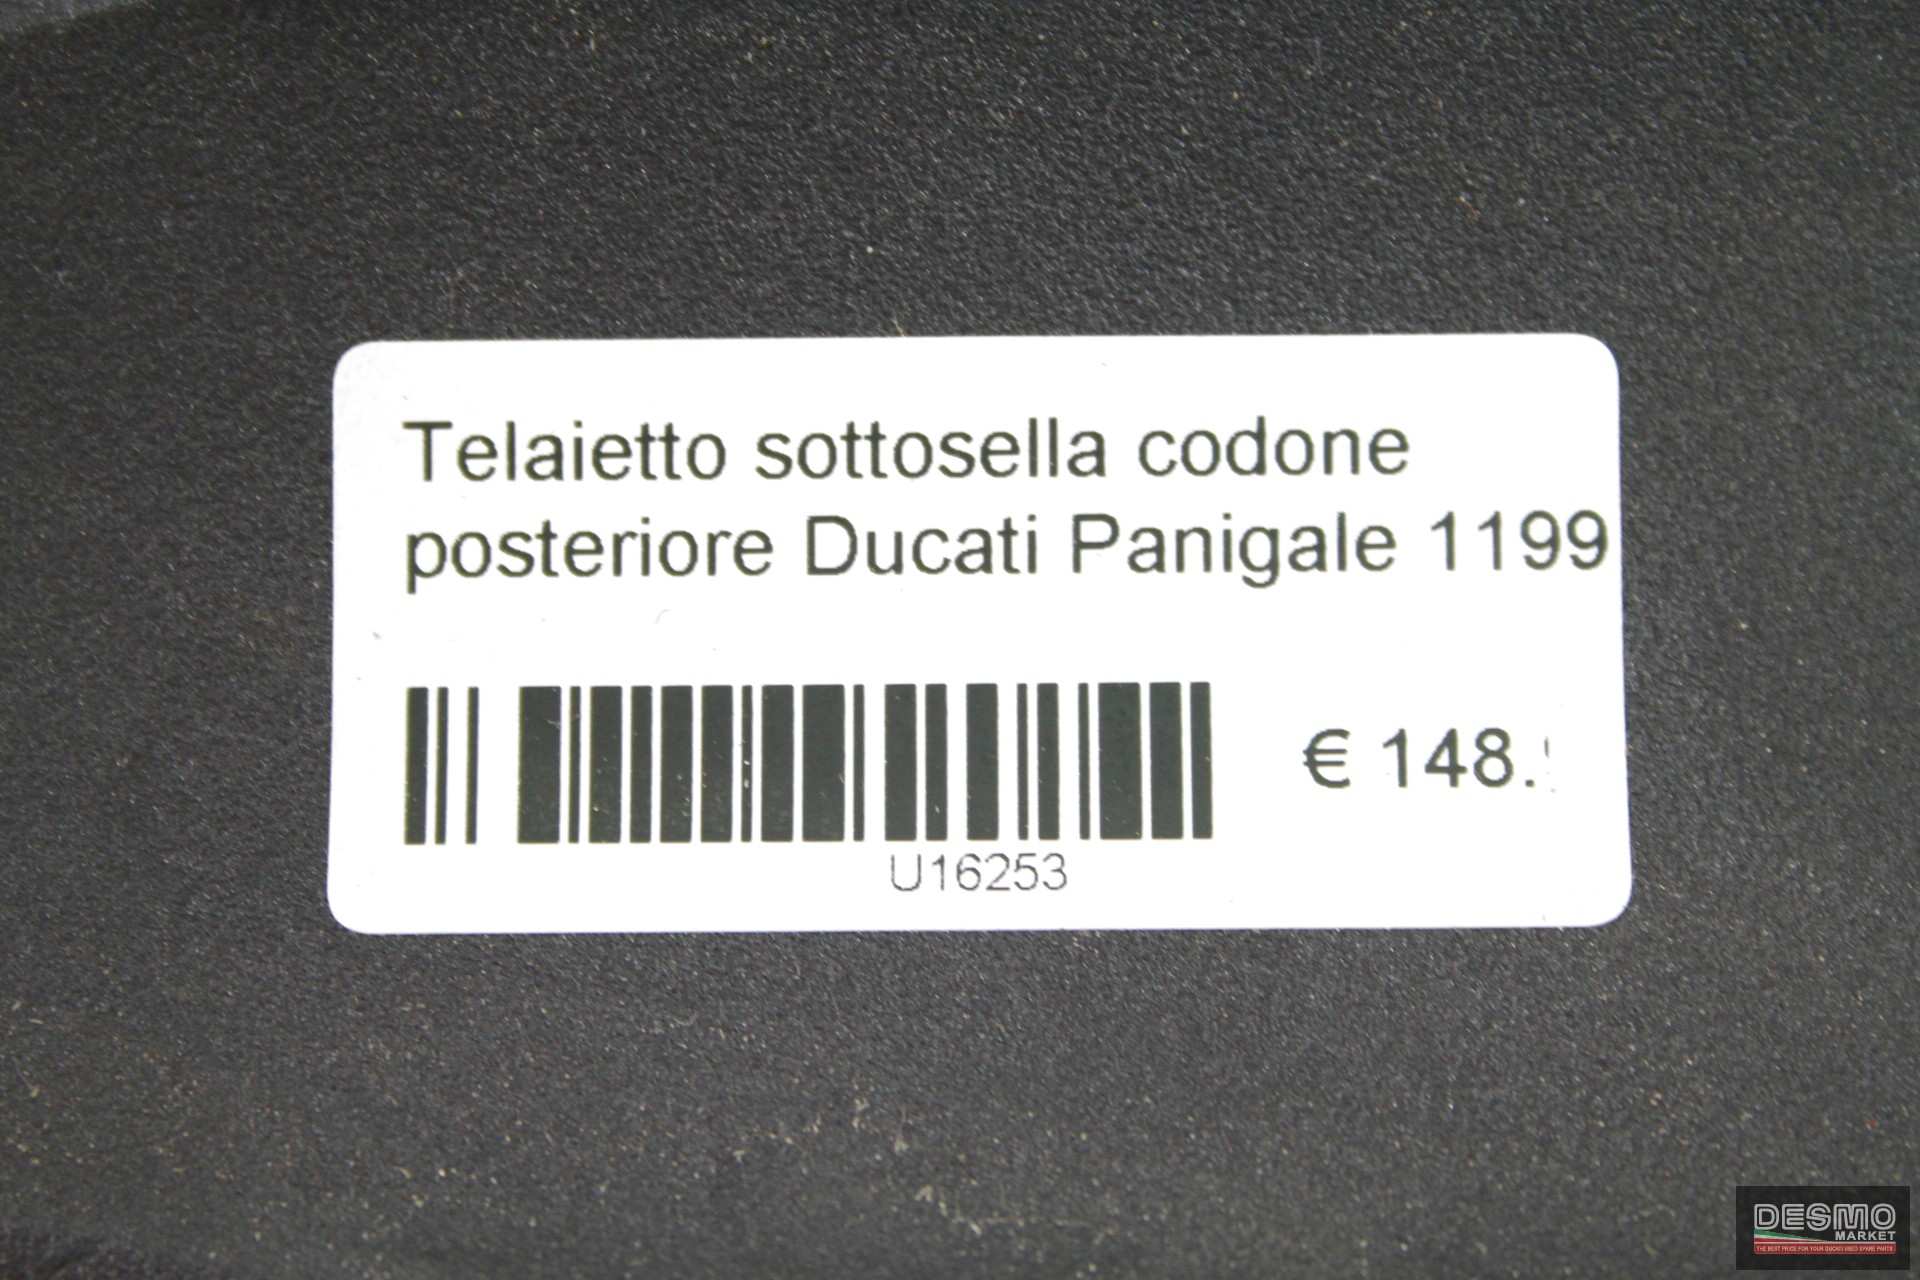 Telaietto sottosella codone posteriore Ducati Panigale 1199